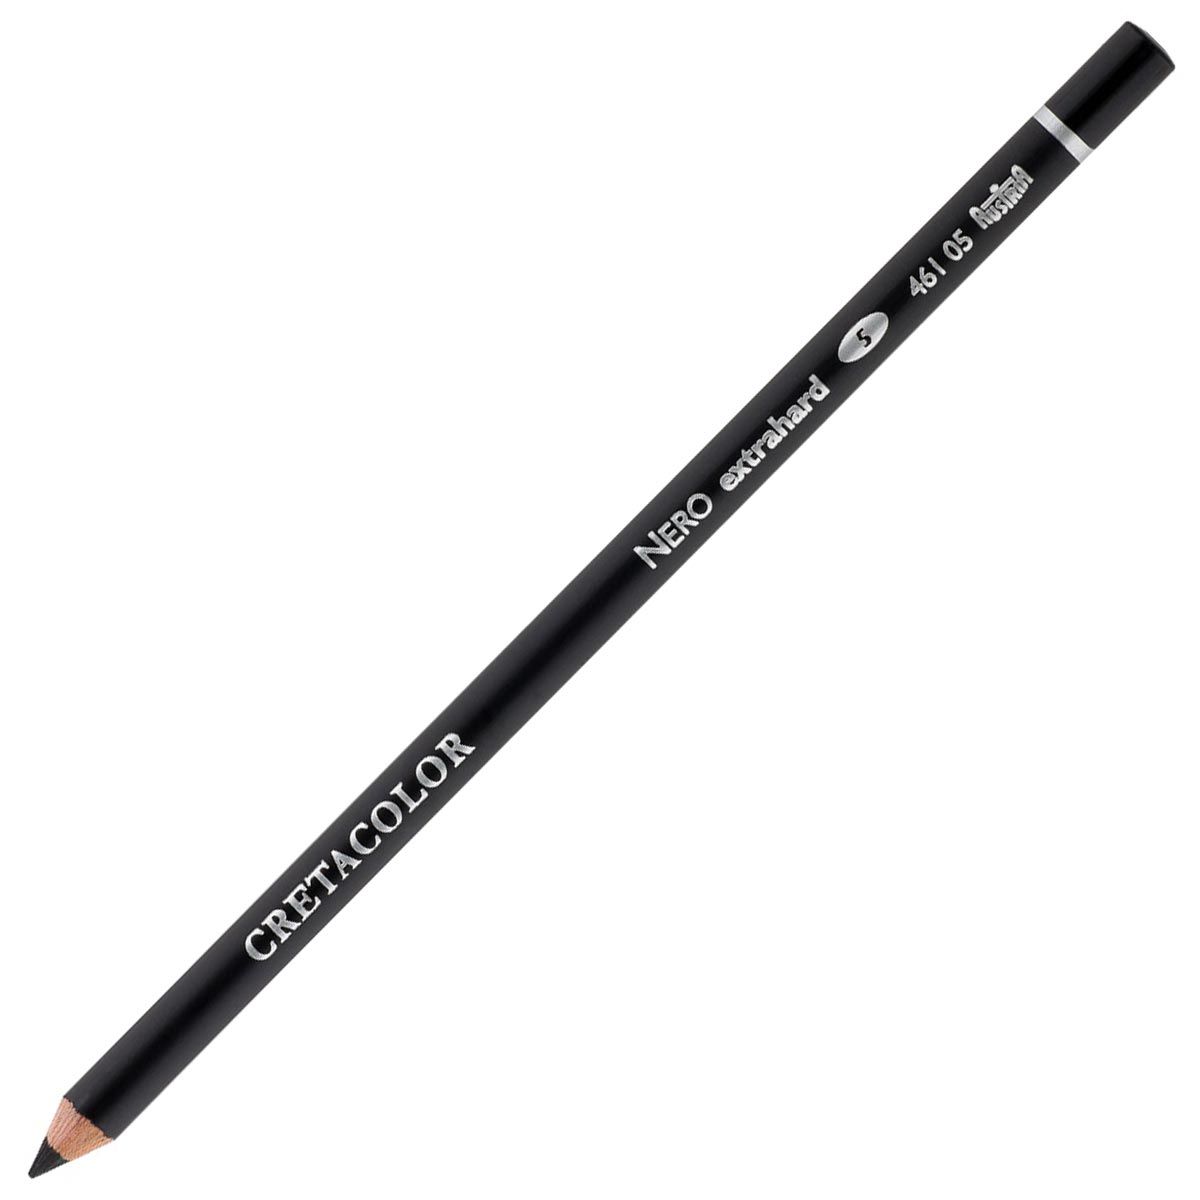 Cretacolor Nero Drawing Pencil - Extra Hard